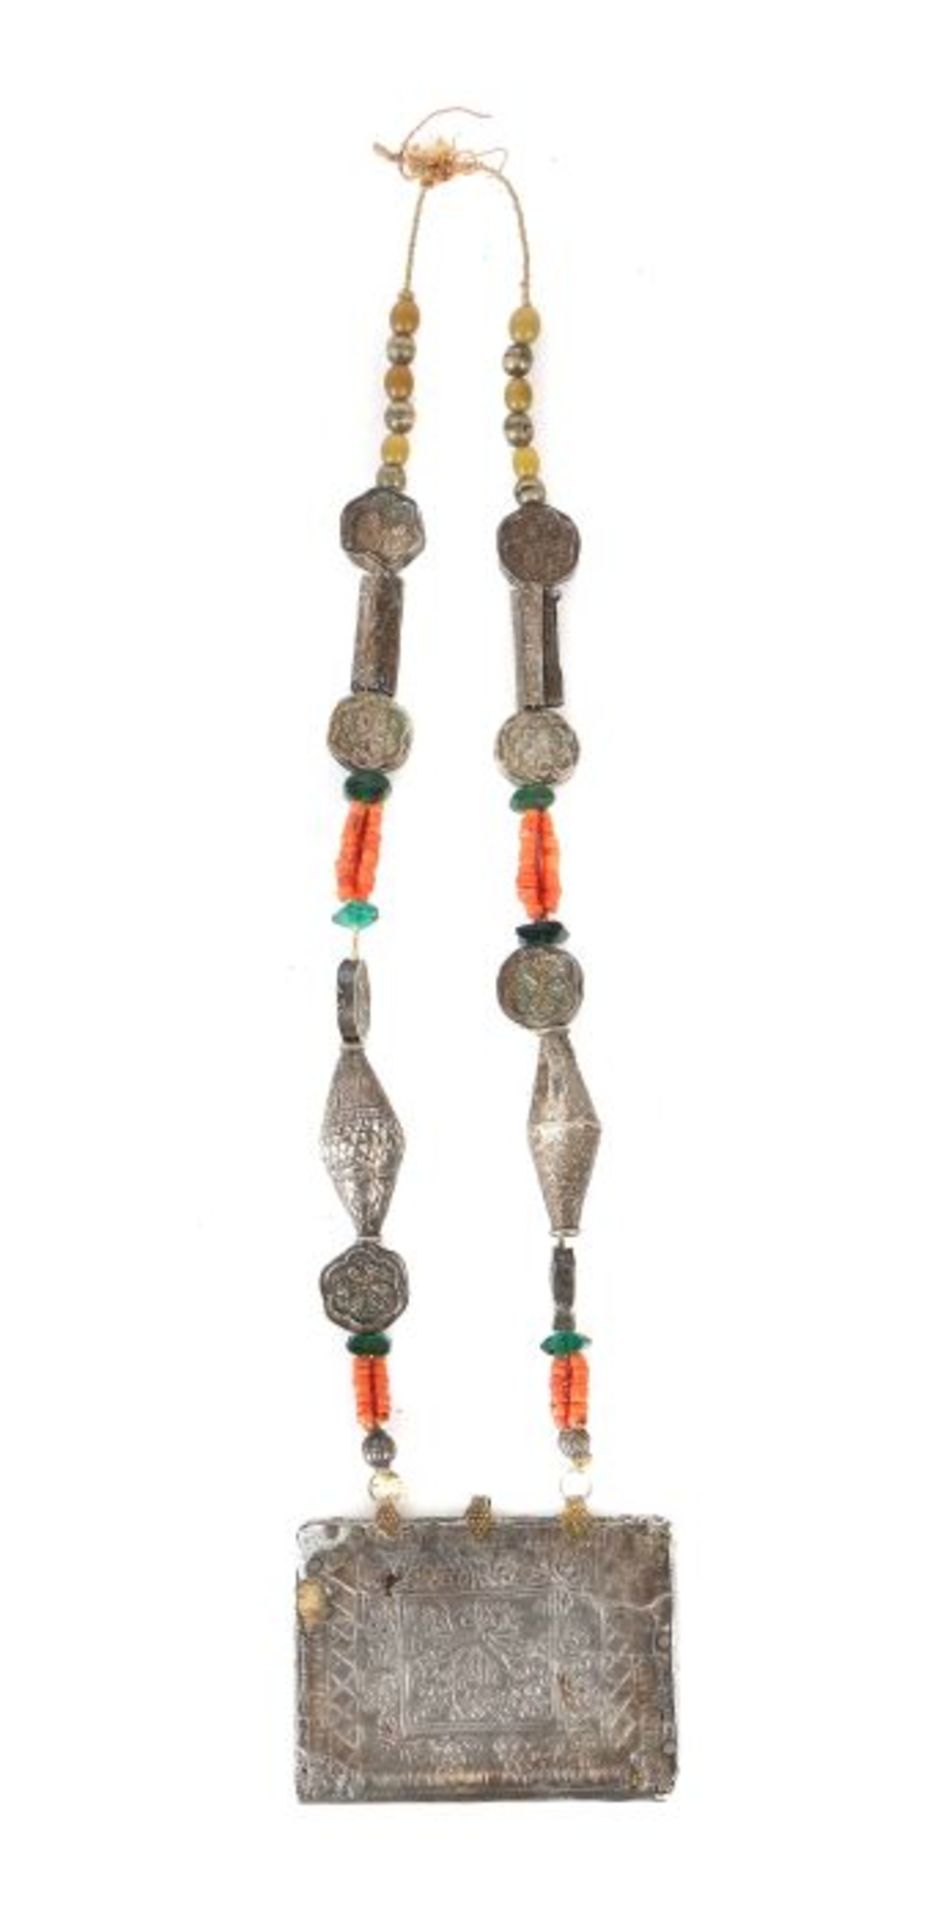 Amulett mit Kette Nepal oder Tibet, wohl 19. Jh., Holz/Silber, rechteckiges Amulett aus Holz mit